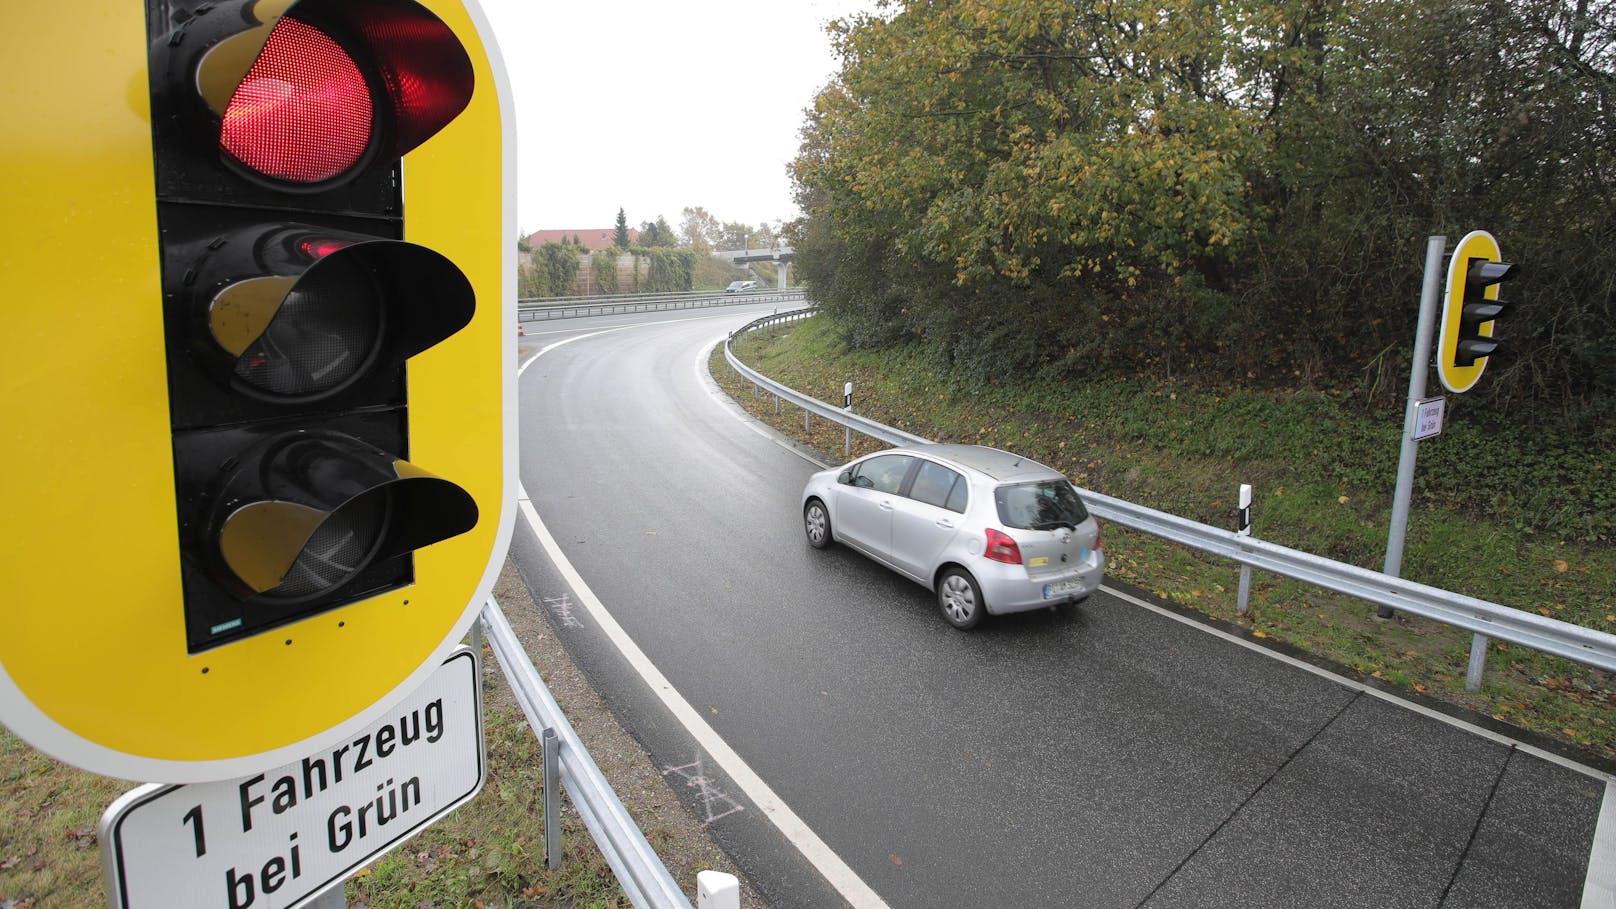 Eine Zuflussregelungsanlagen samt Hinweisschild "1 Fahrzeug bei Grün" an einer Autobahnauffahrt in Deutschland, Archivbild 2017.